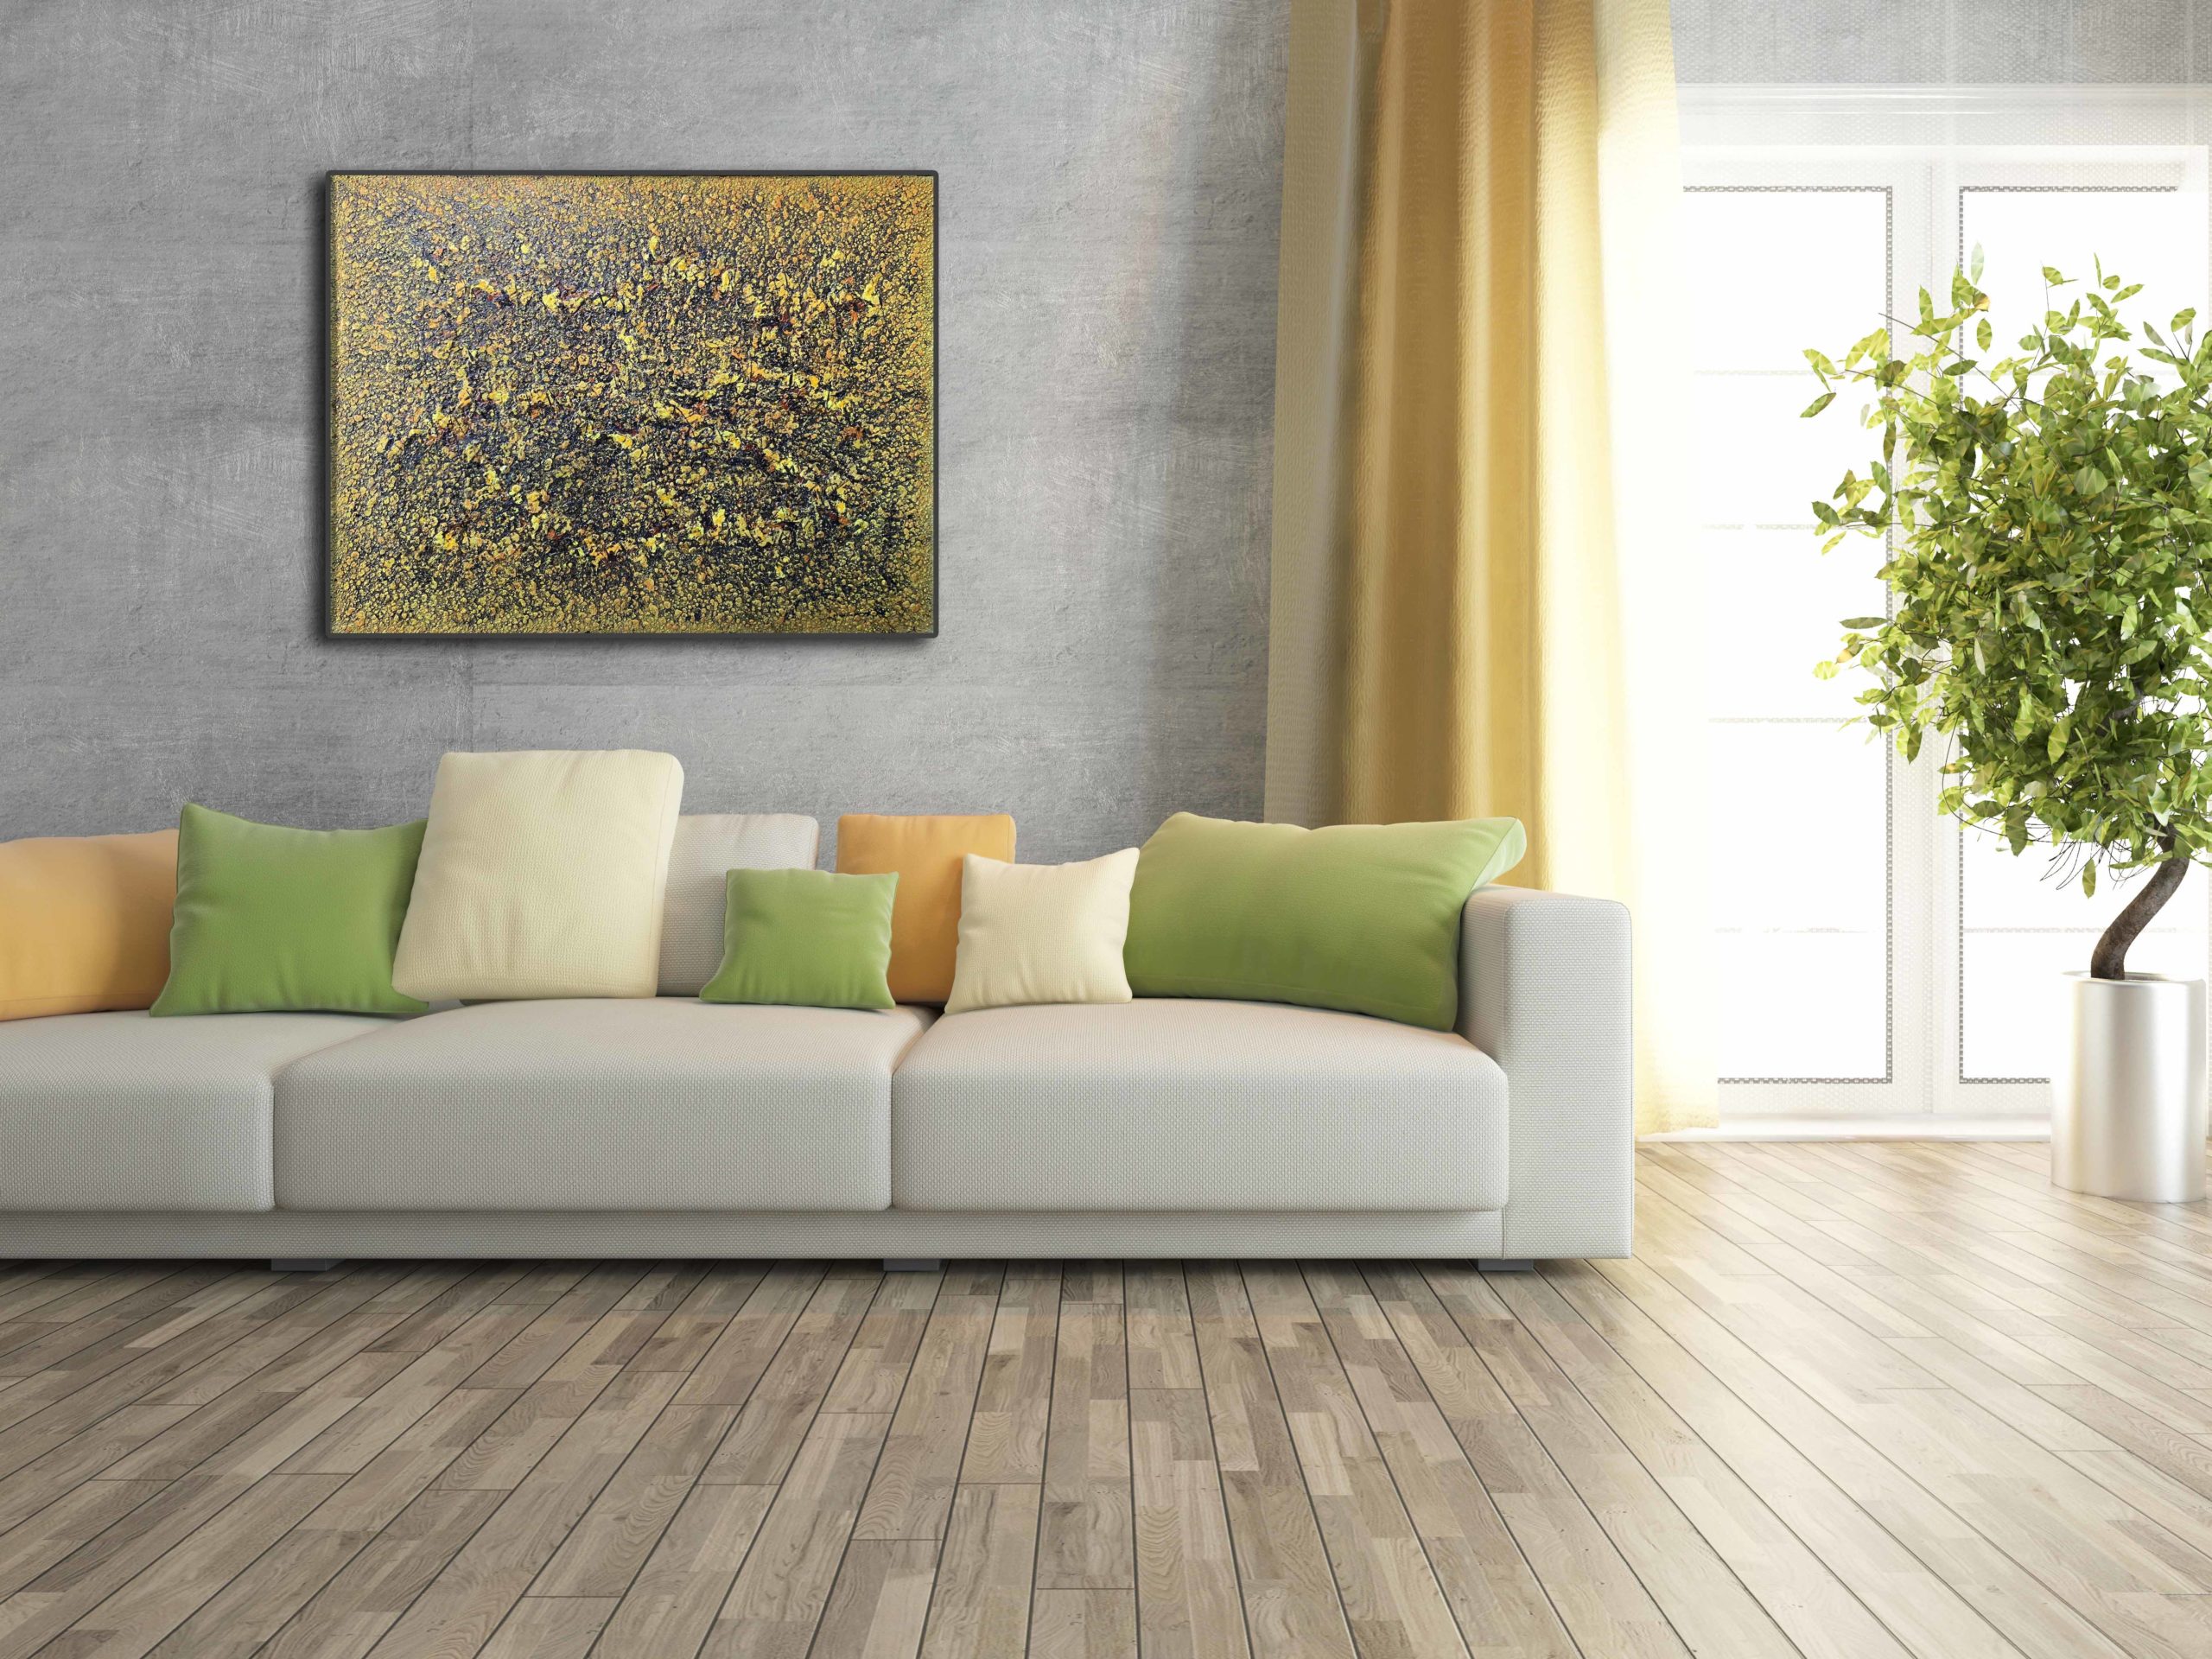 peinture à l huile sur toile abstraite dans les tons de terre et végétal de jean marie zazzi in situ